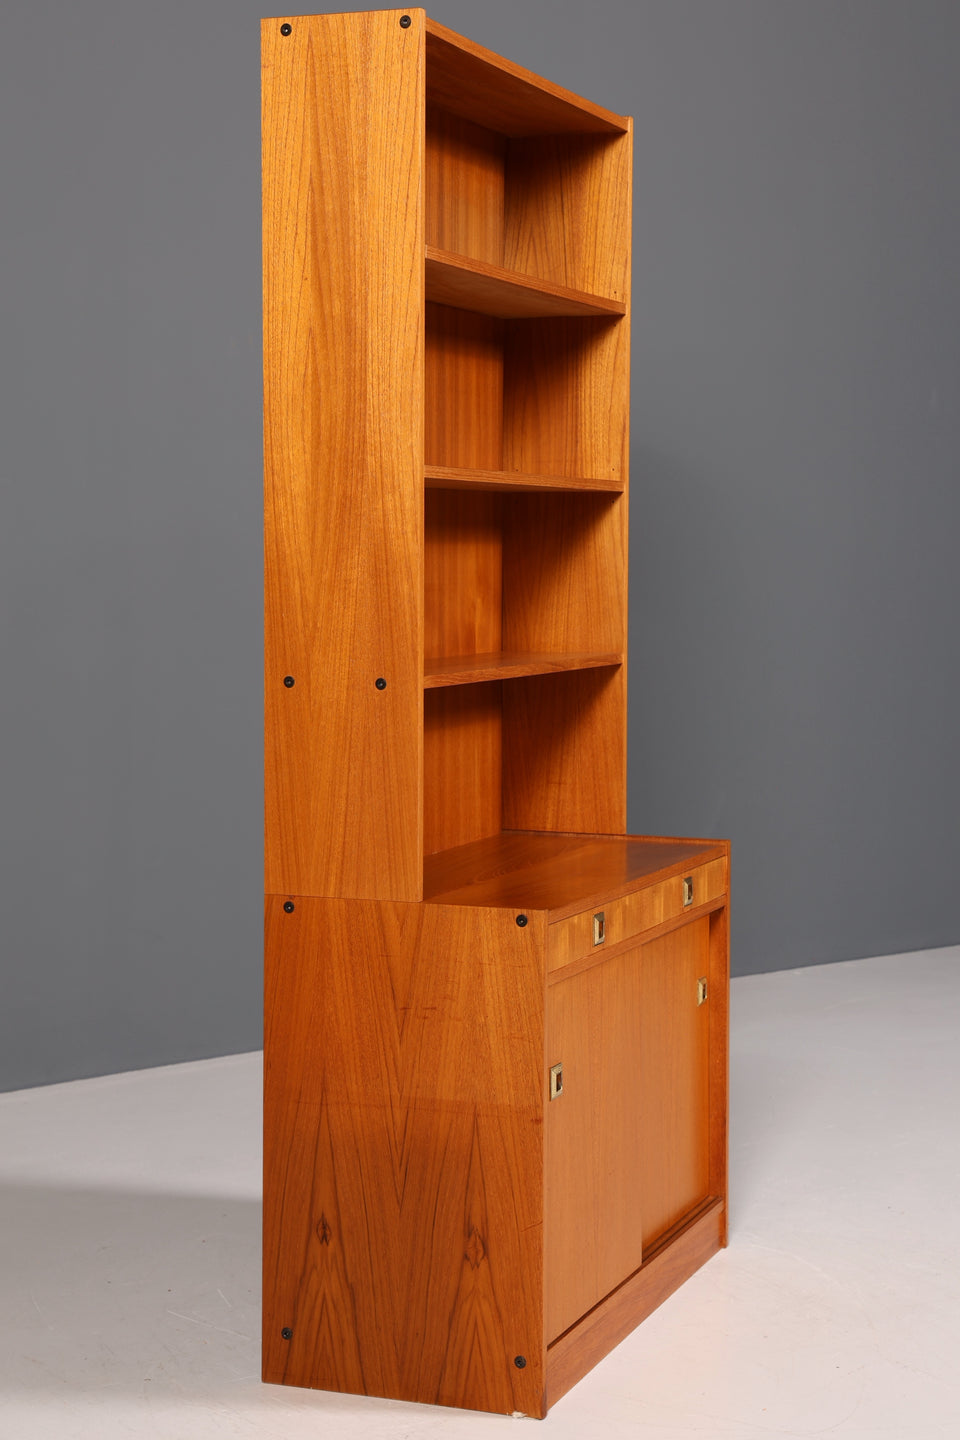 Wunderschönes Mid Century Regal "Made in Denmark" Teak Bücherregal echt Holz Kommode 60er Jahre